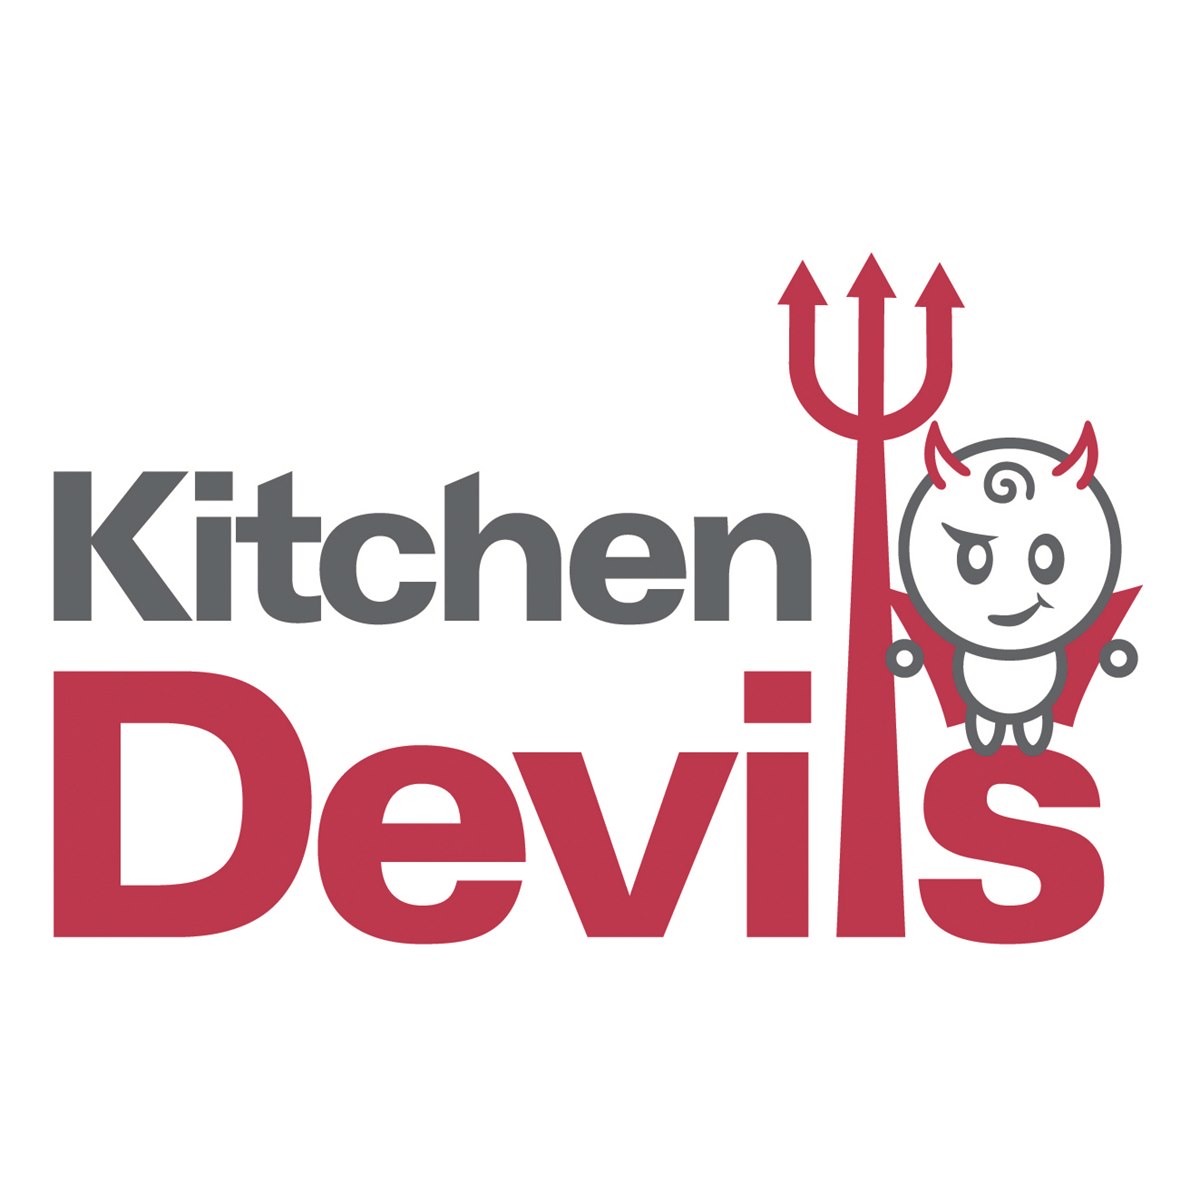 Where to Buy Kitchen Devils Scissors